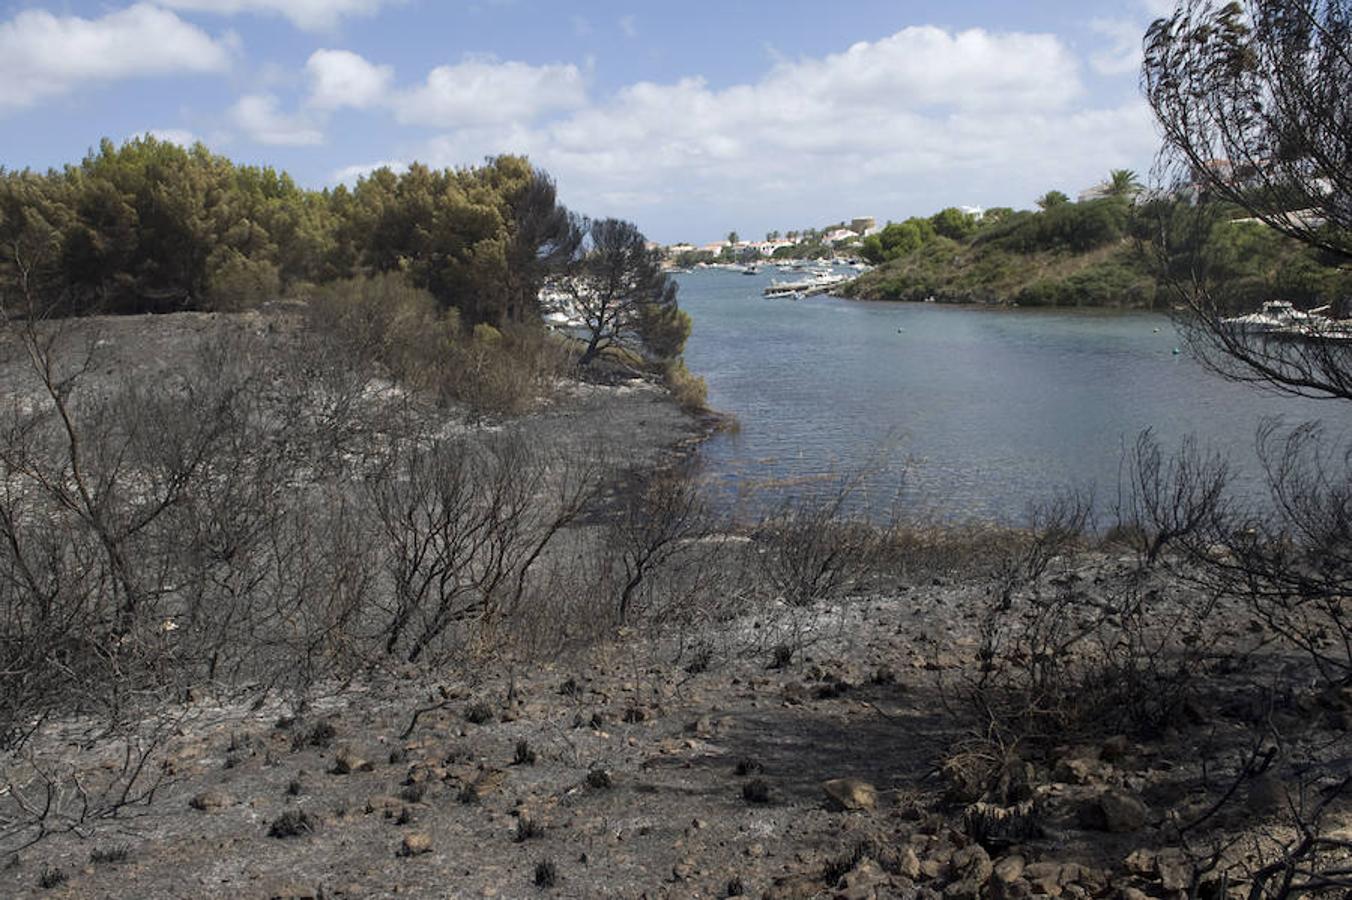 El Instituto Balear de la Naturaleza (Ibanat) ha dado por estabilizado el incendio declarado esta madrugada al norte de Menorca, en cuya extinción trabajan aún bomberos, brigadas forestales y medios aéreos para evitar que las llamas se reaviven con el fuerte viento que sopla en la zona